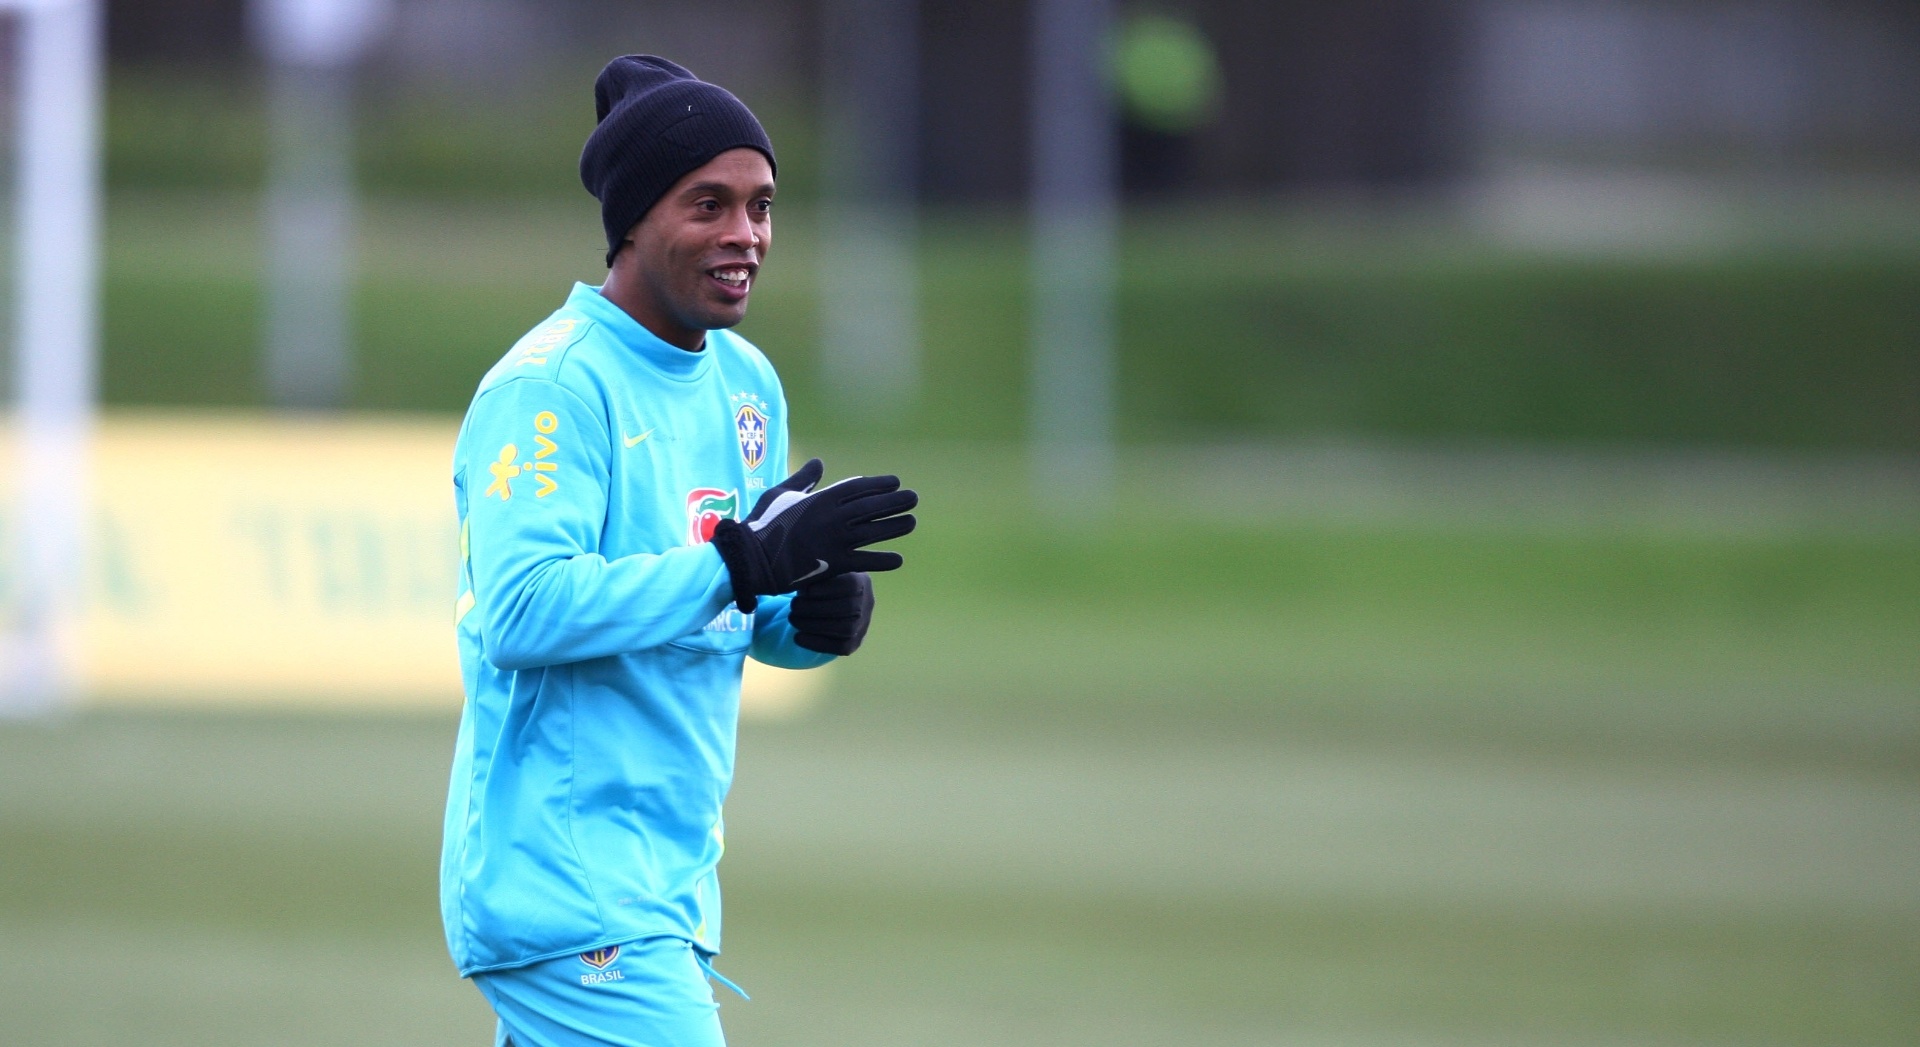 05.fev.2013 - Ronaldinho Gaúcho encara o frio de Londres no treino da seleção brasileira